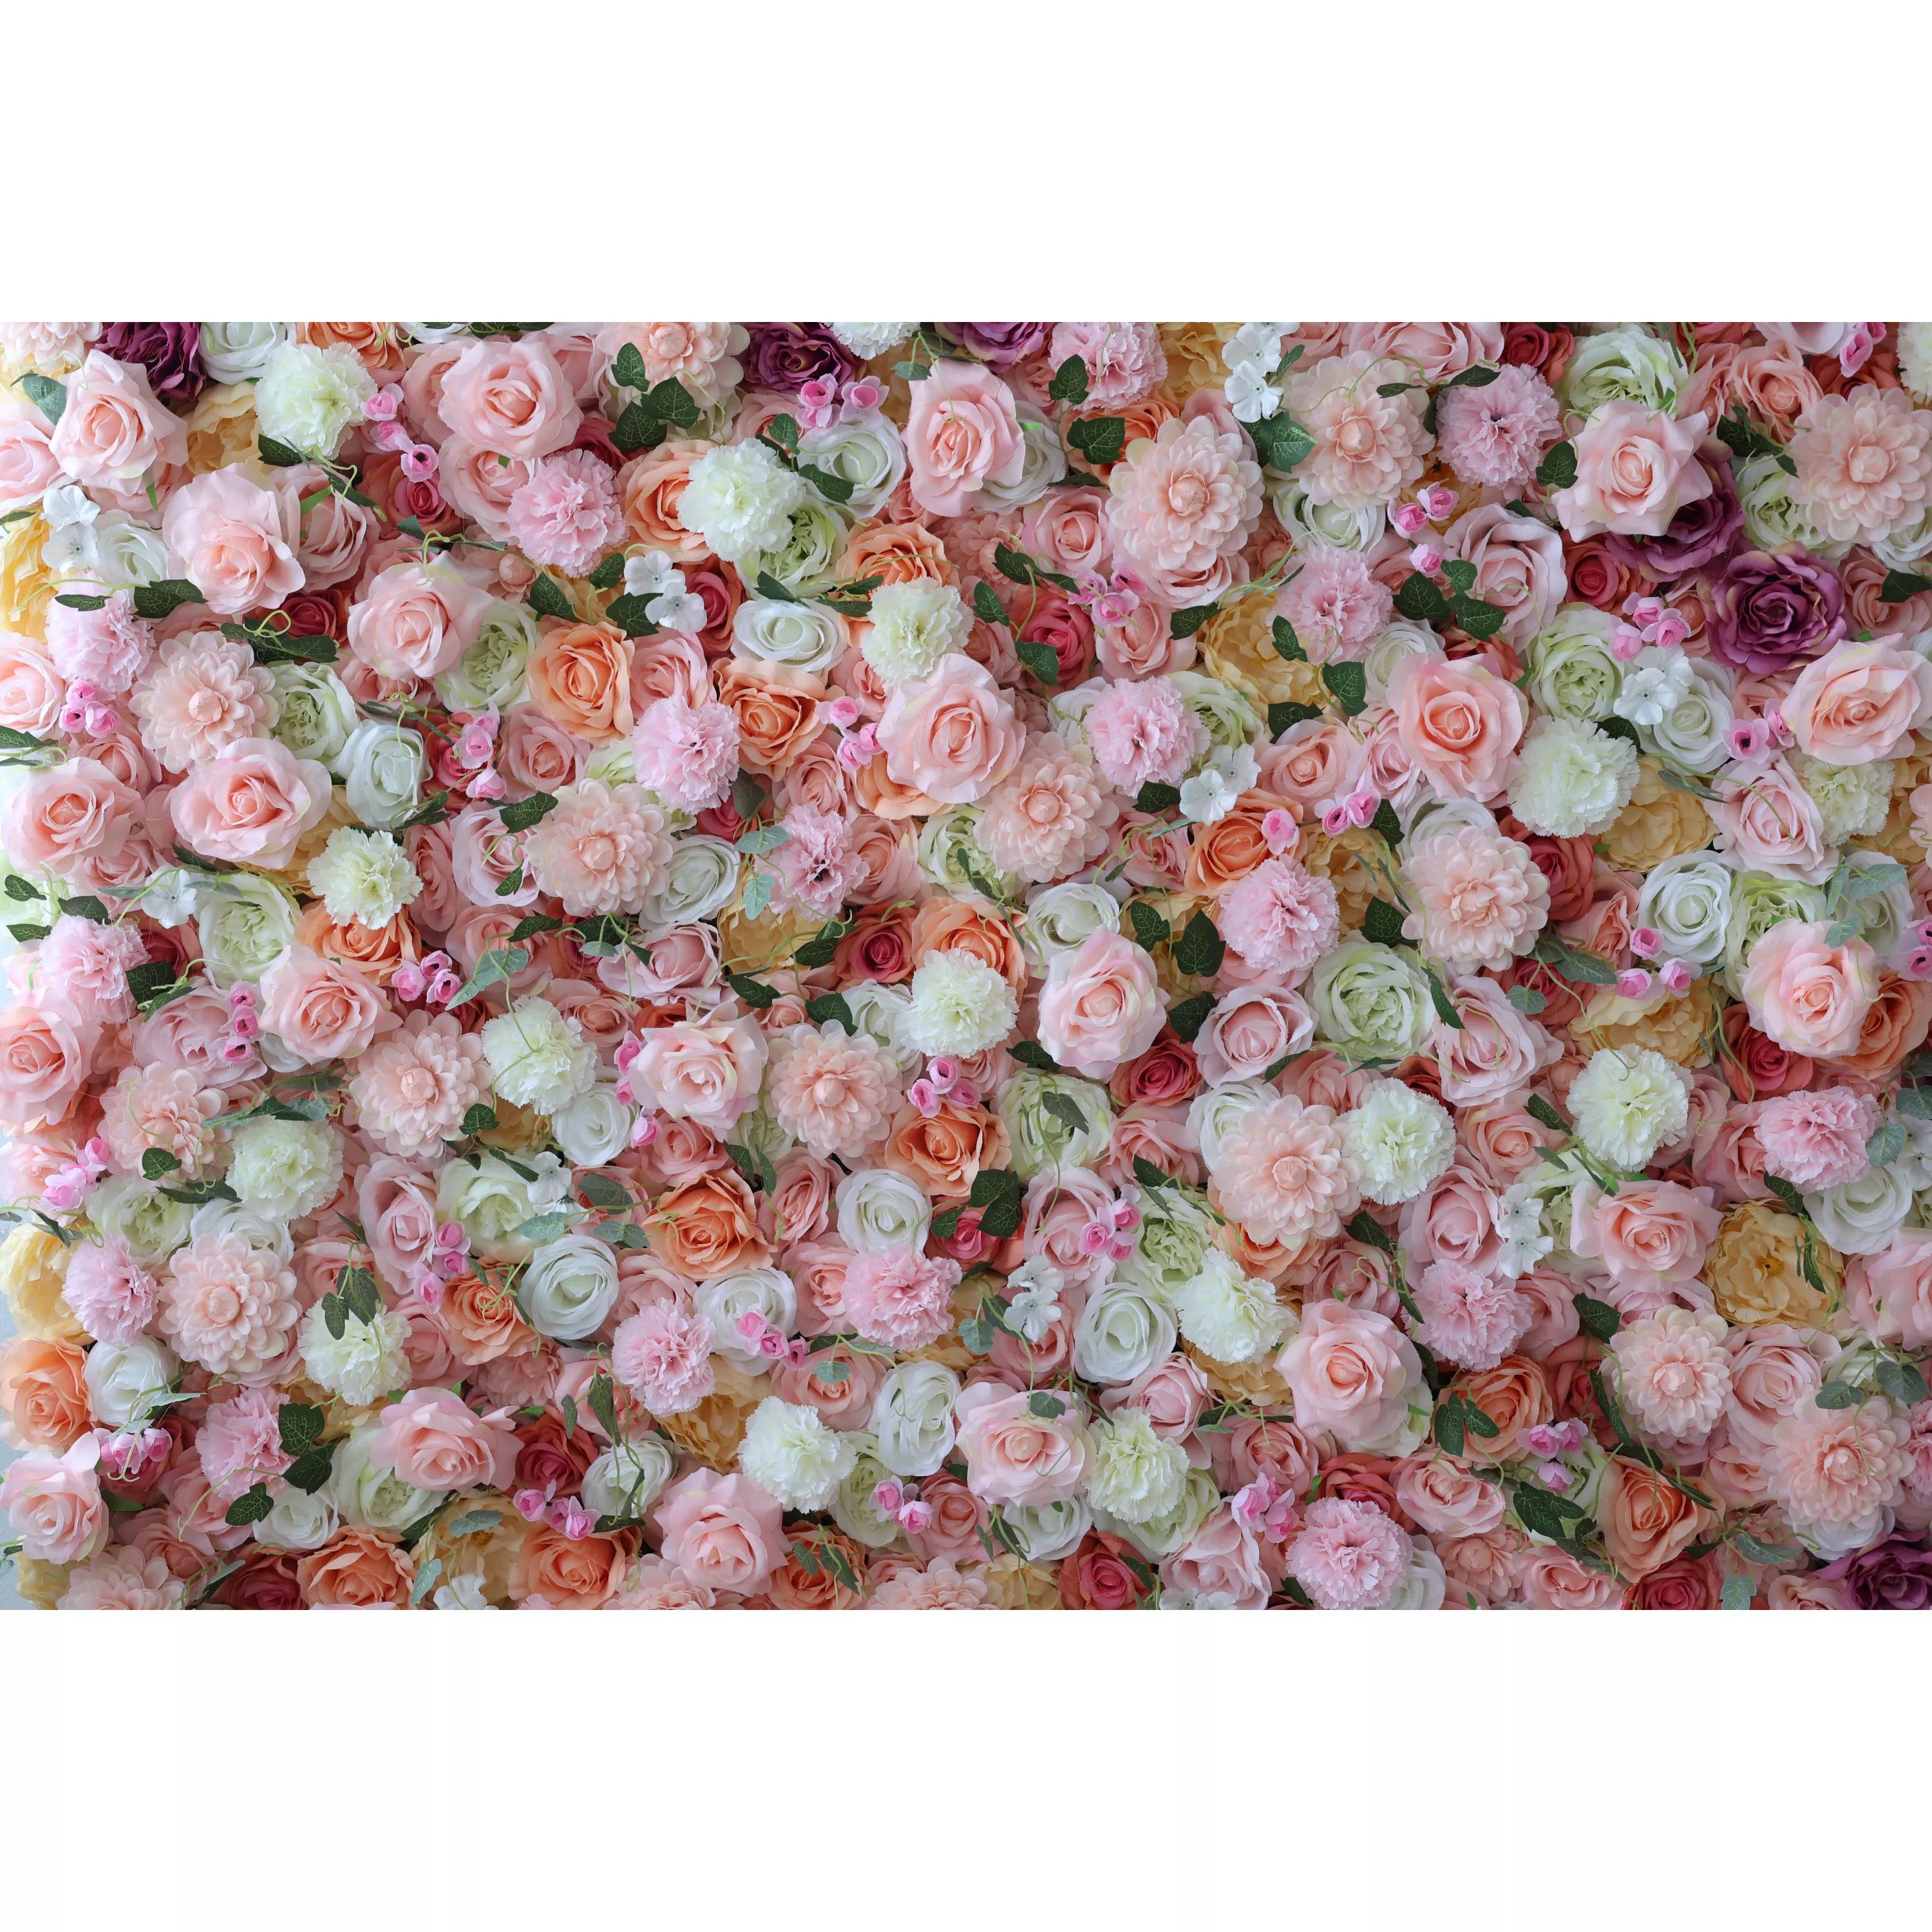 Fleurs Valar enroulables pour mur de fleurs artificielles - Jardin de rêves : symphonie de roses pastel - Des célébrations radieuses aux retraites zen - VF-228